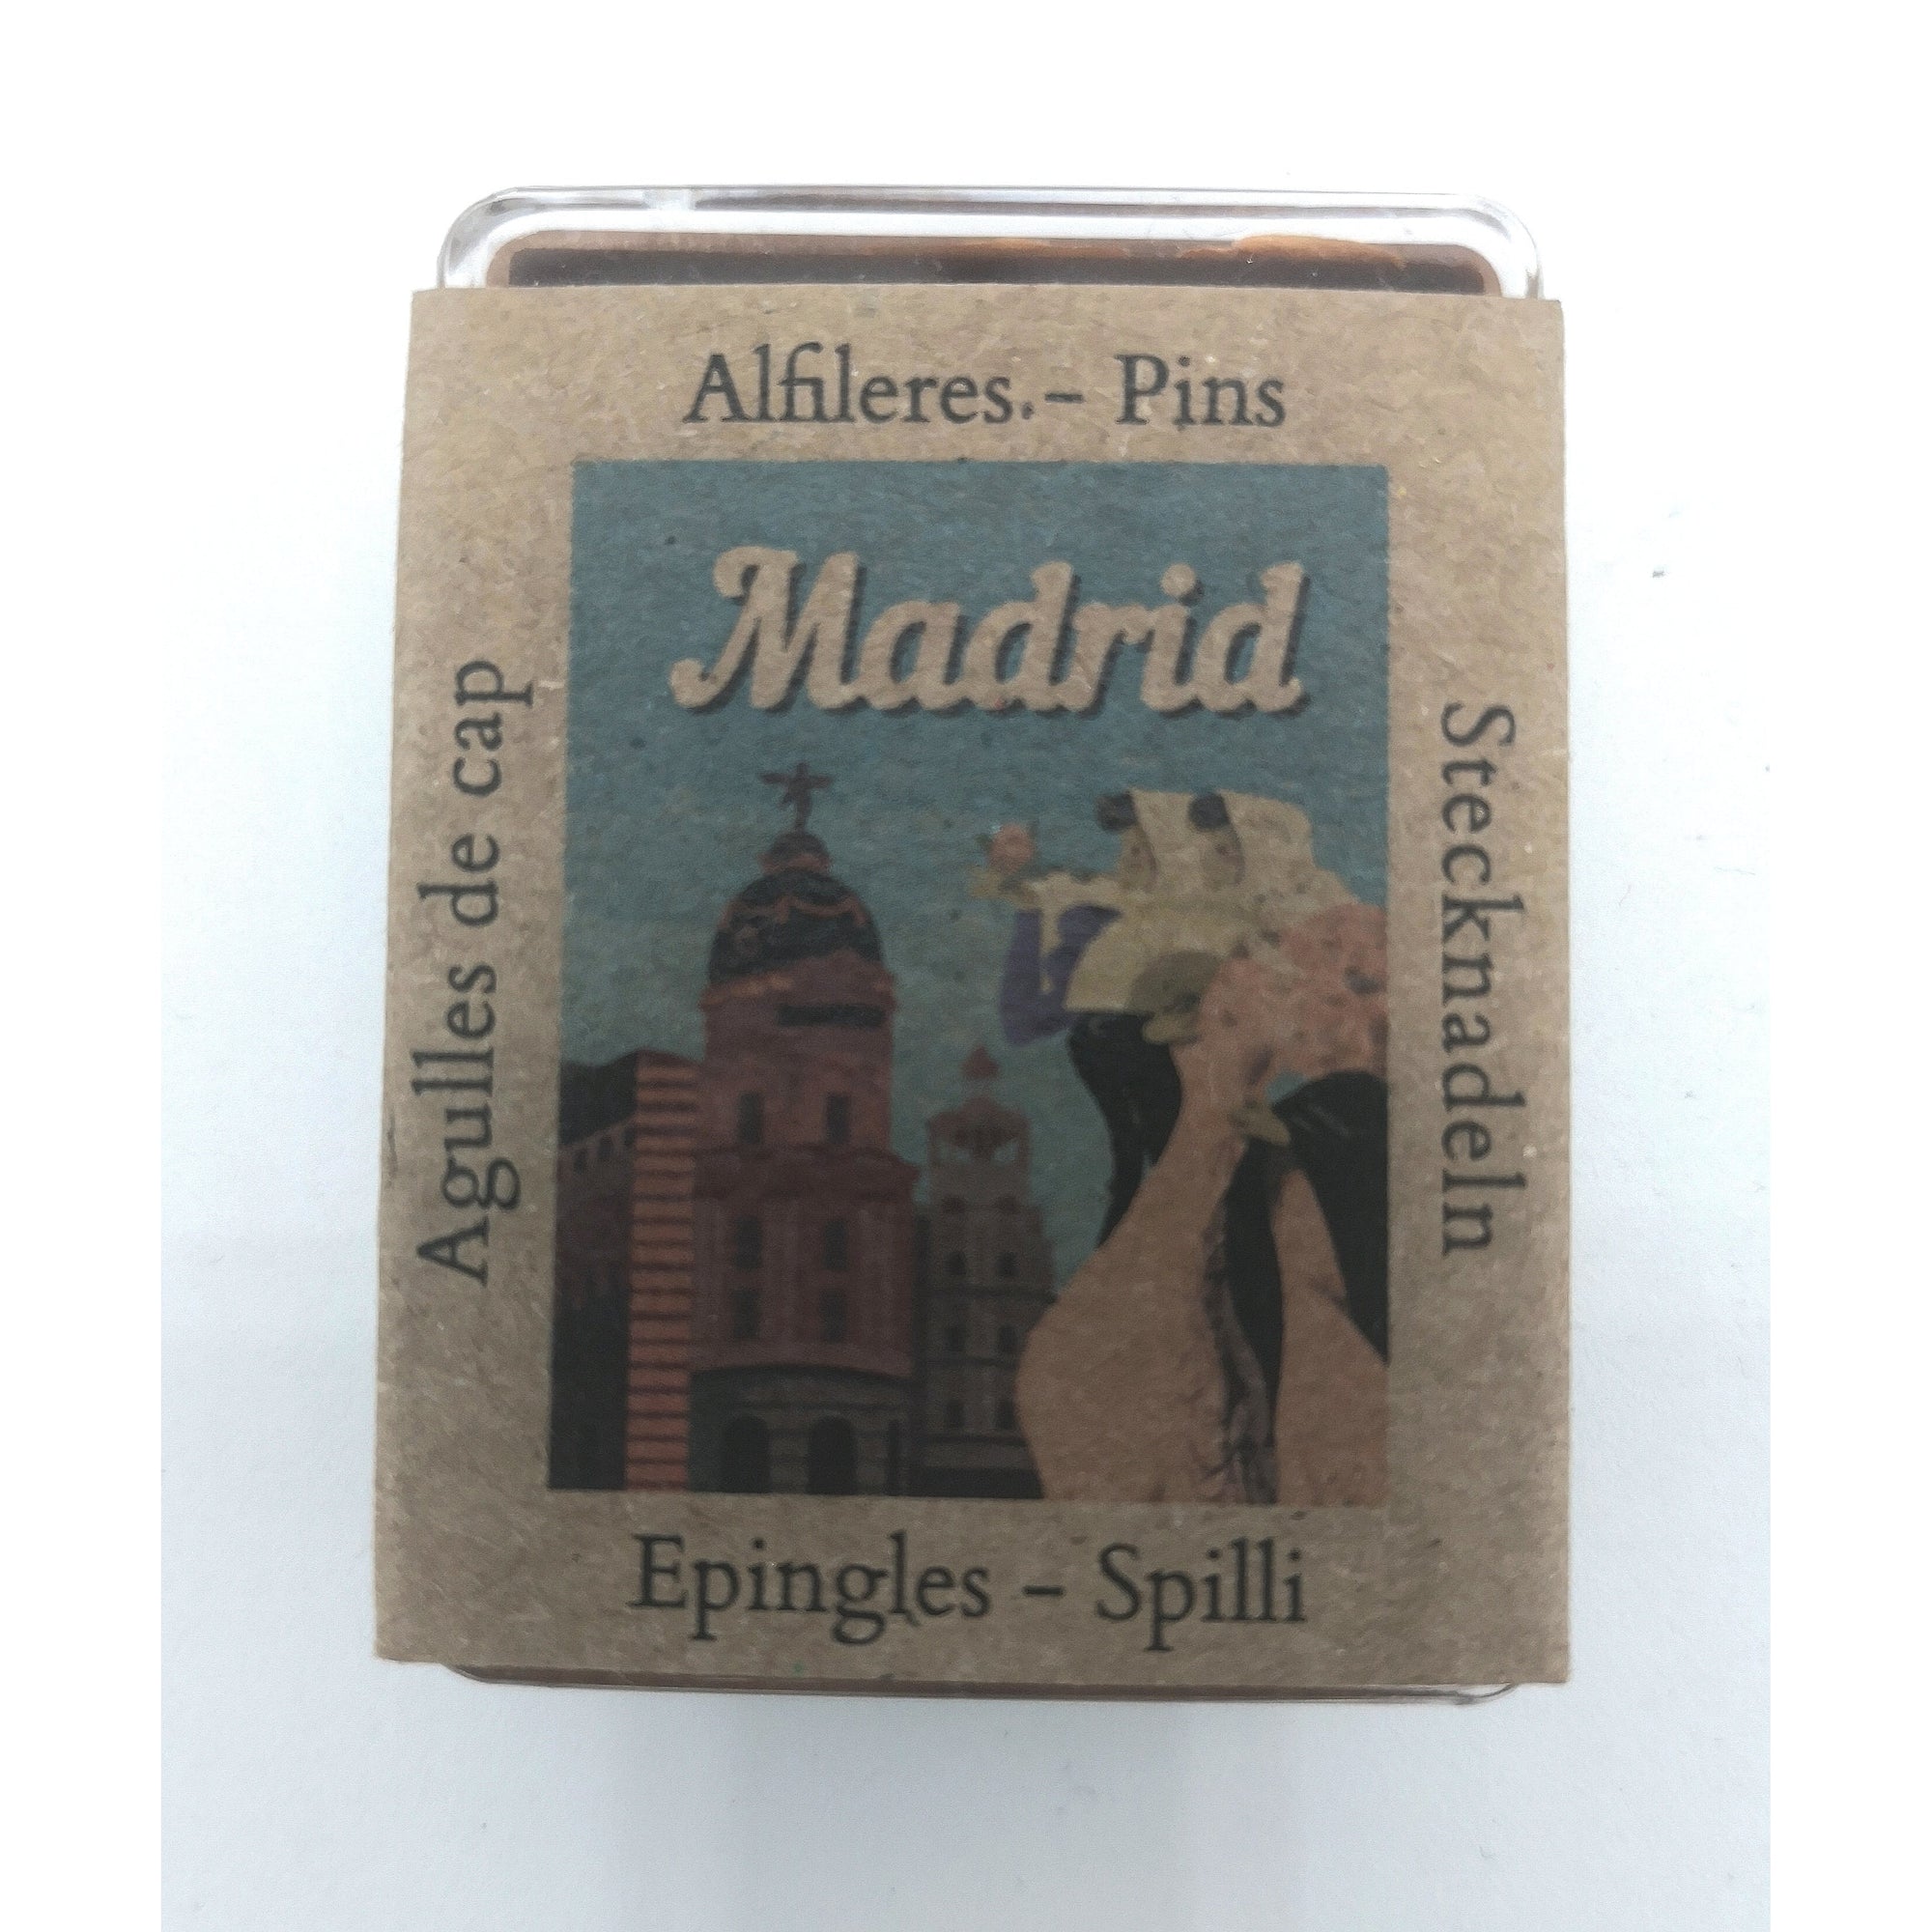 Alfileres colección "Vuelta al mundo" MADRID